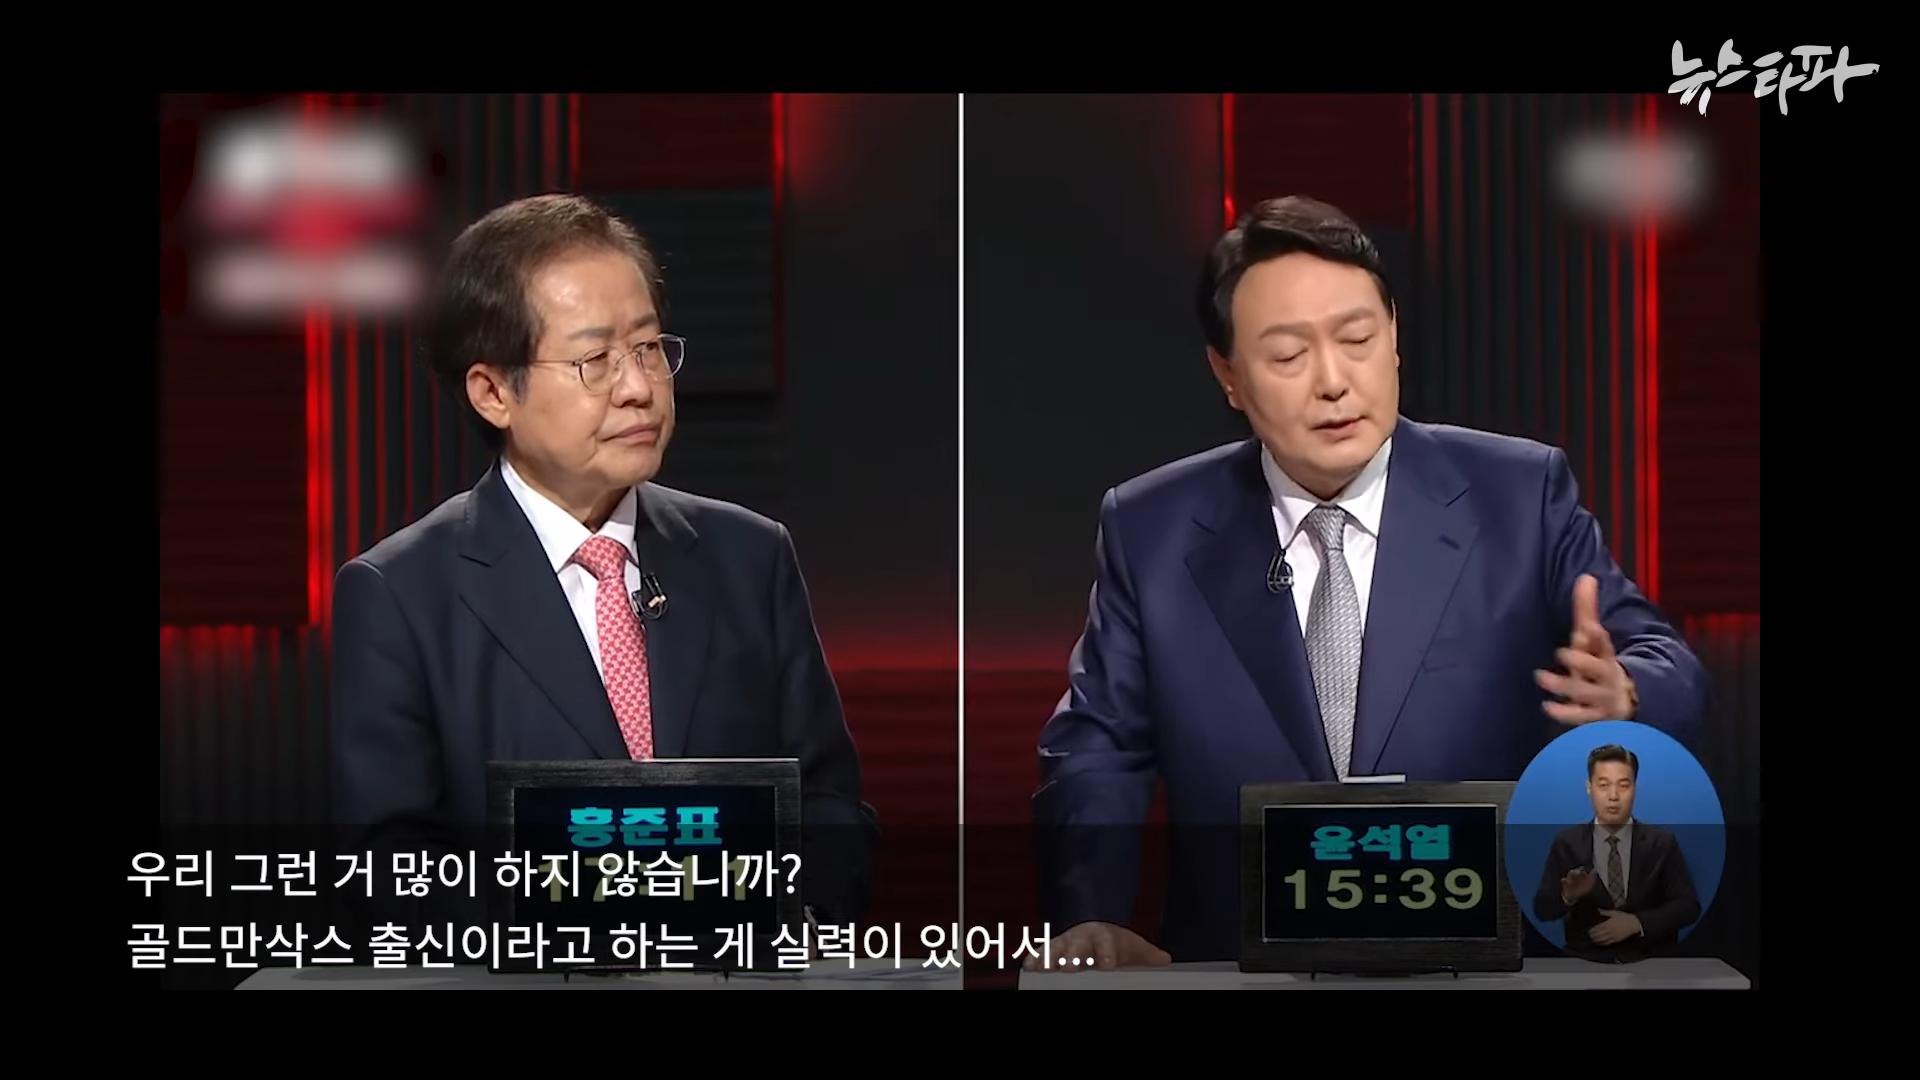 김건희 도이치모터스 녹취록 공개. 대통령 거짓말 드러났다 - 뉴스타파 3-20 screenshot.png.jpg